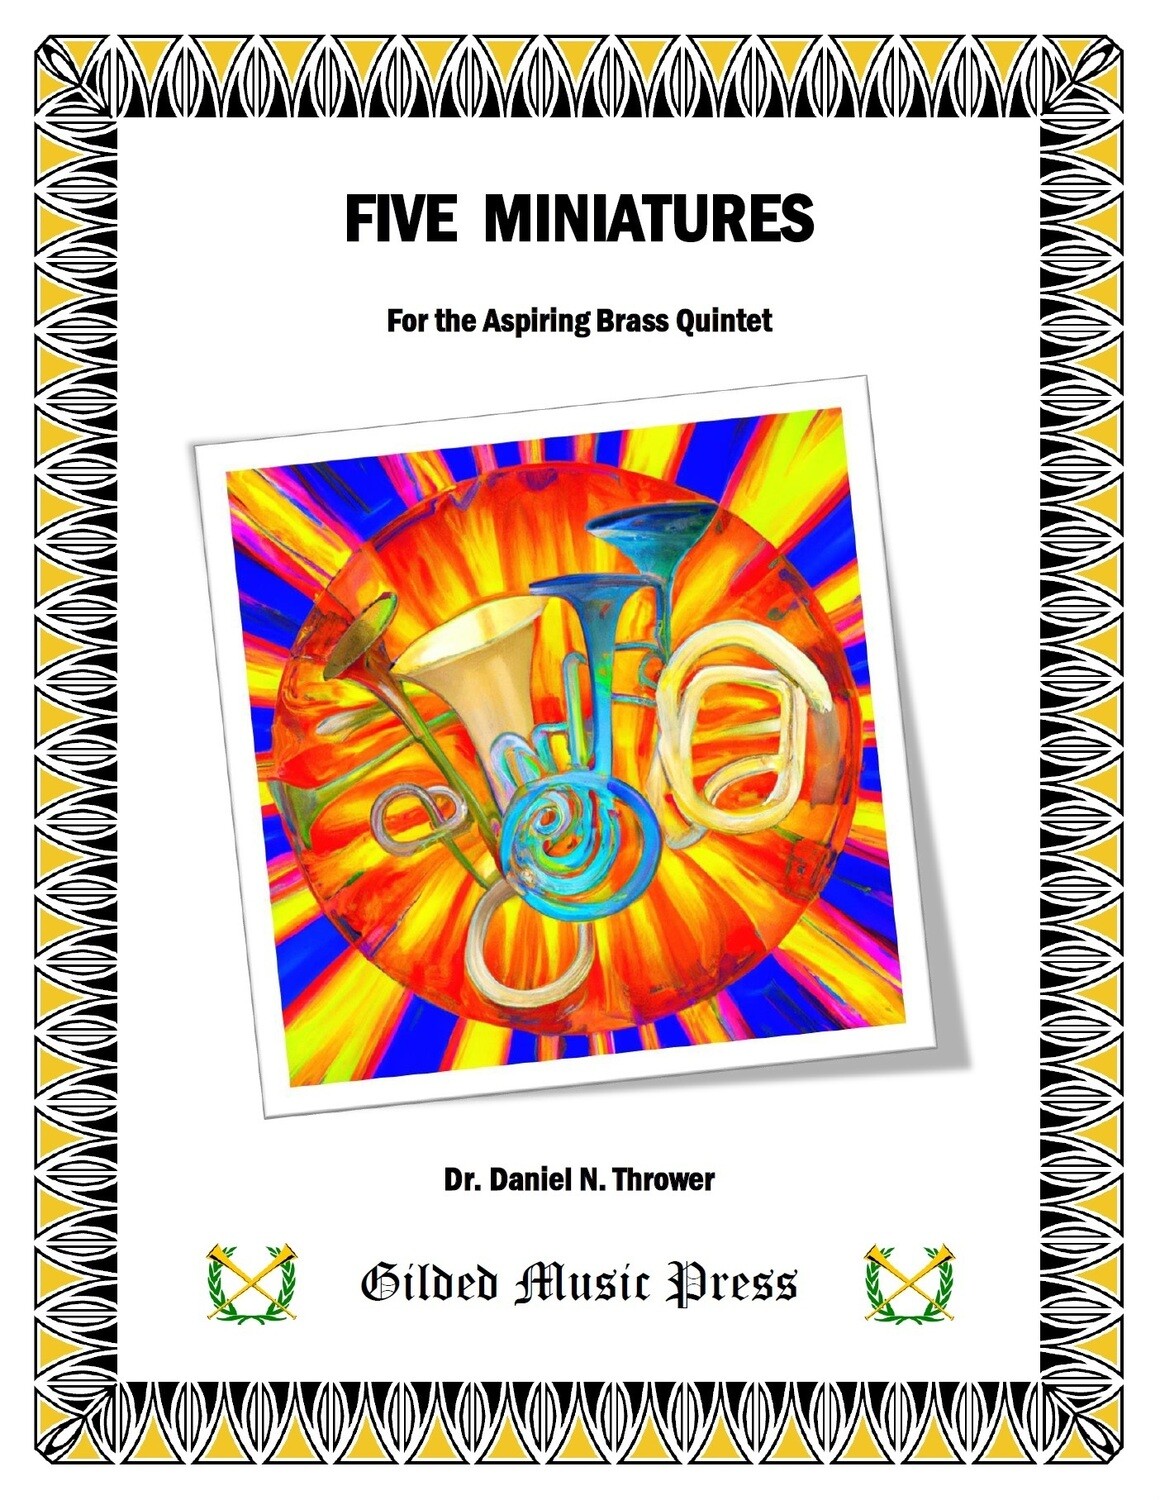 GMP 3051: Five Miniatures for Aspiring Brass Quintet, Dr. Daniel Thrower